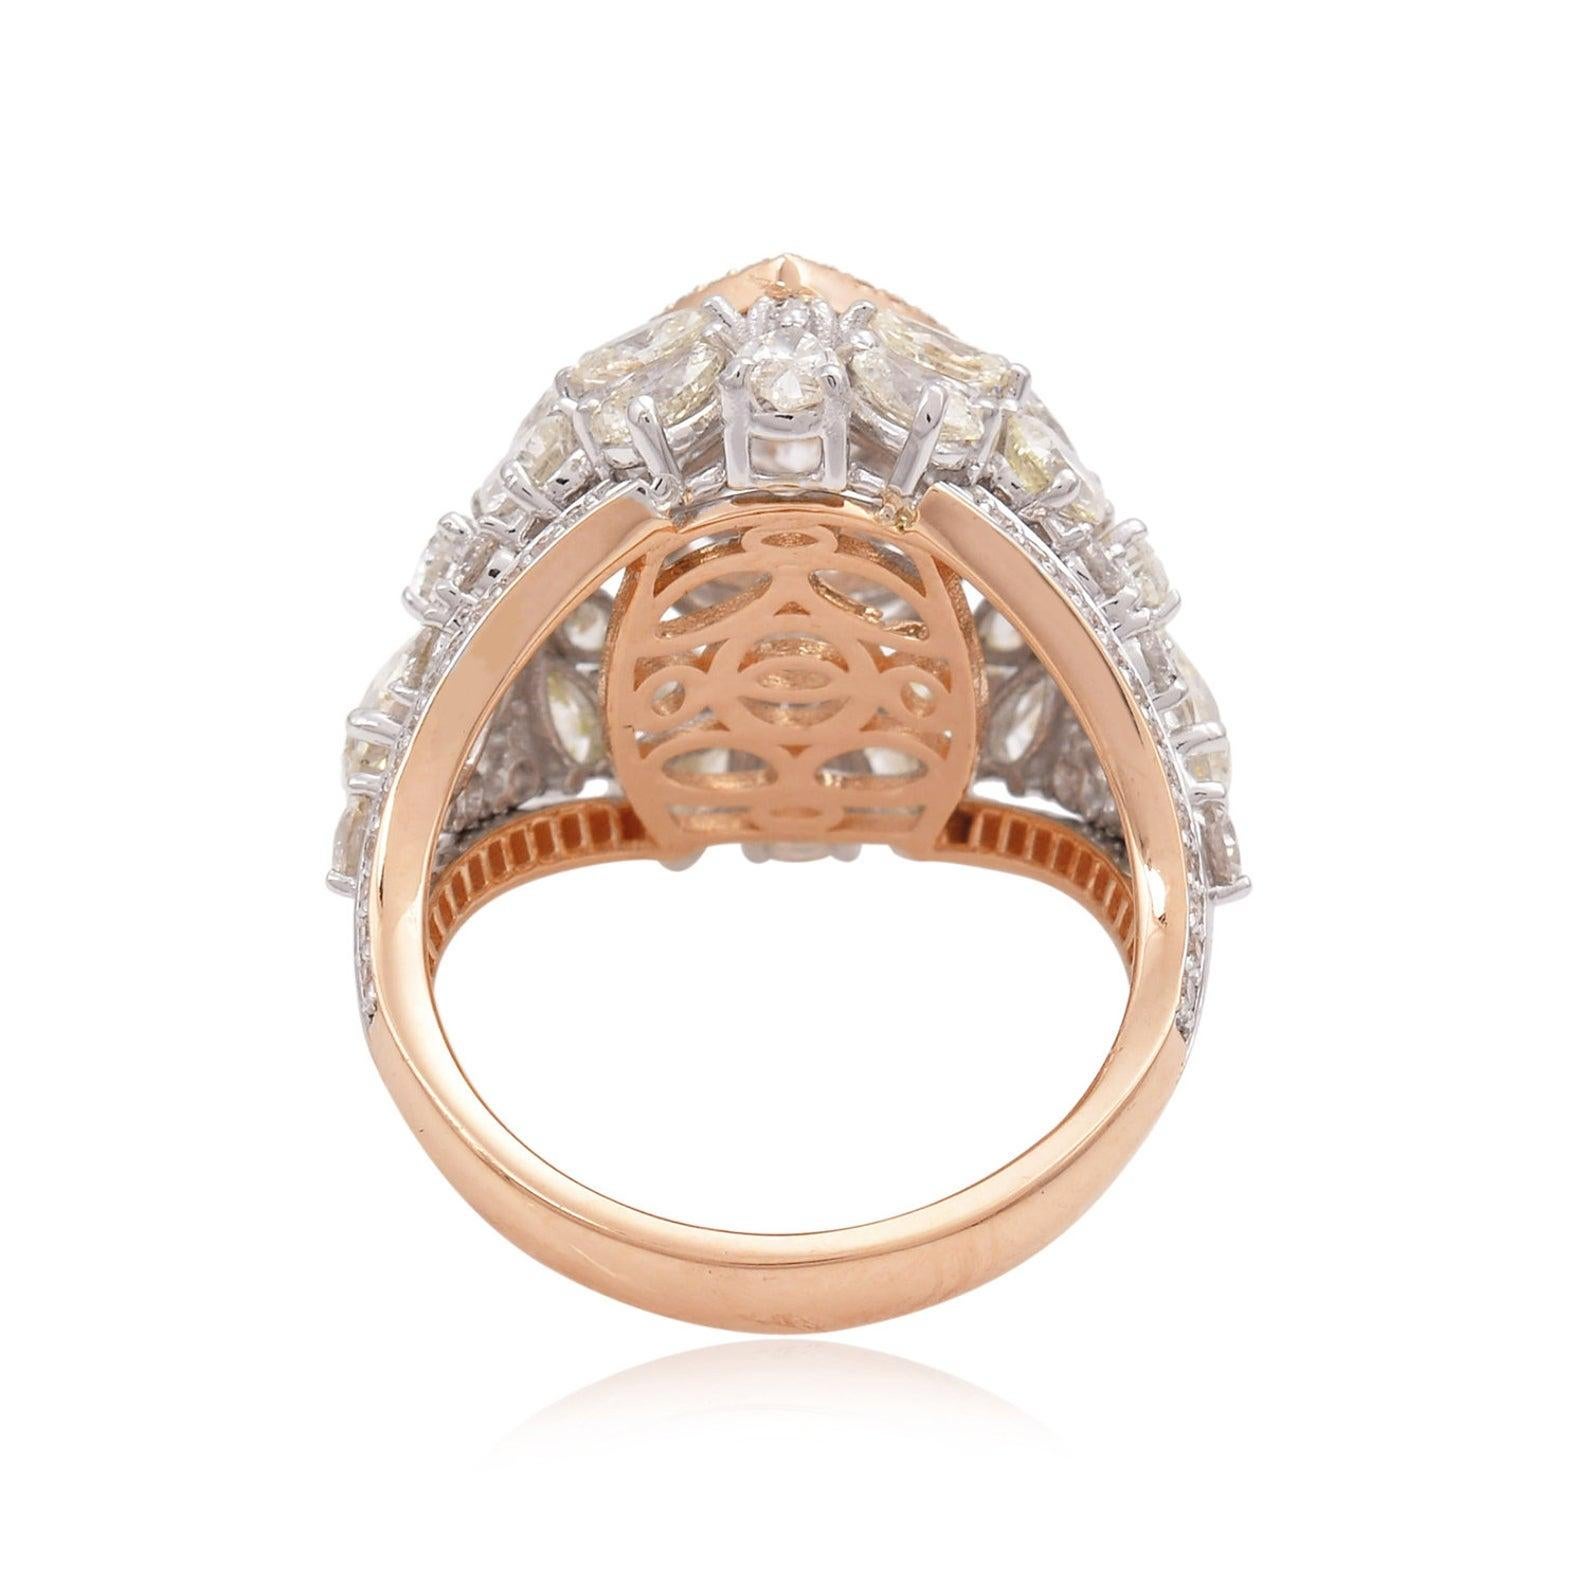 For Sale:  5.0 Carat Diamond 18 Karat Gold Ring 2